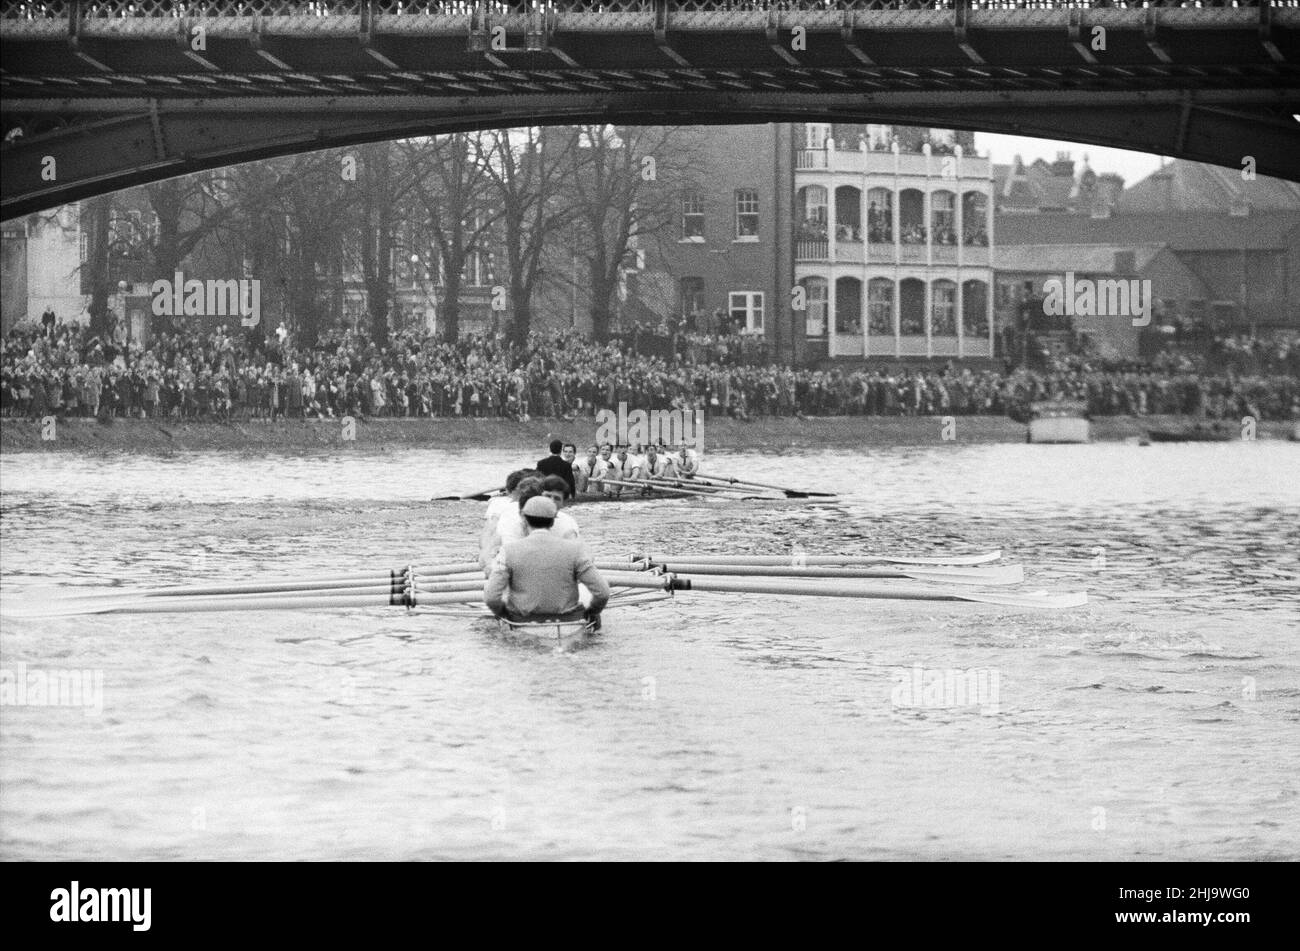 Oxford Versus Cambridge Boat Race, on the River Thames, London, 23rd de marzo de 1963 La Boat Race 109th tuvo lugar el 23 de marzo de 1963. El evento, que se celebra anualmente, es una carrera de remo en paralelo entre equipos de las universidades de Oxford y Cambridge a lo largo del río Támesis. La carrera, umpired por Gerald Ellison, el Obispo de Chester, fue ganada por Oxford con un margen ganador de cinco longitudes. Foto tomada el 23rd de marzo de 1963 Foto de stock